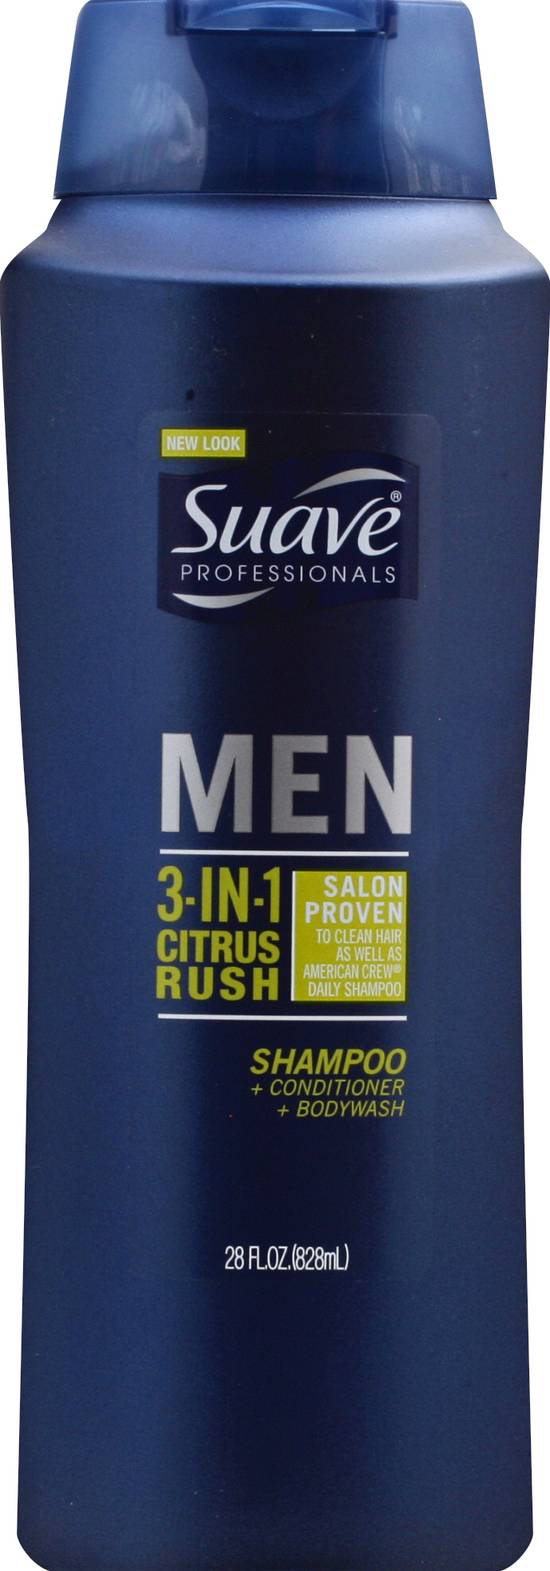 Suave Men 3-in-1 Citrus Rush Shampoo Conditioner & Body Wash